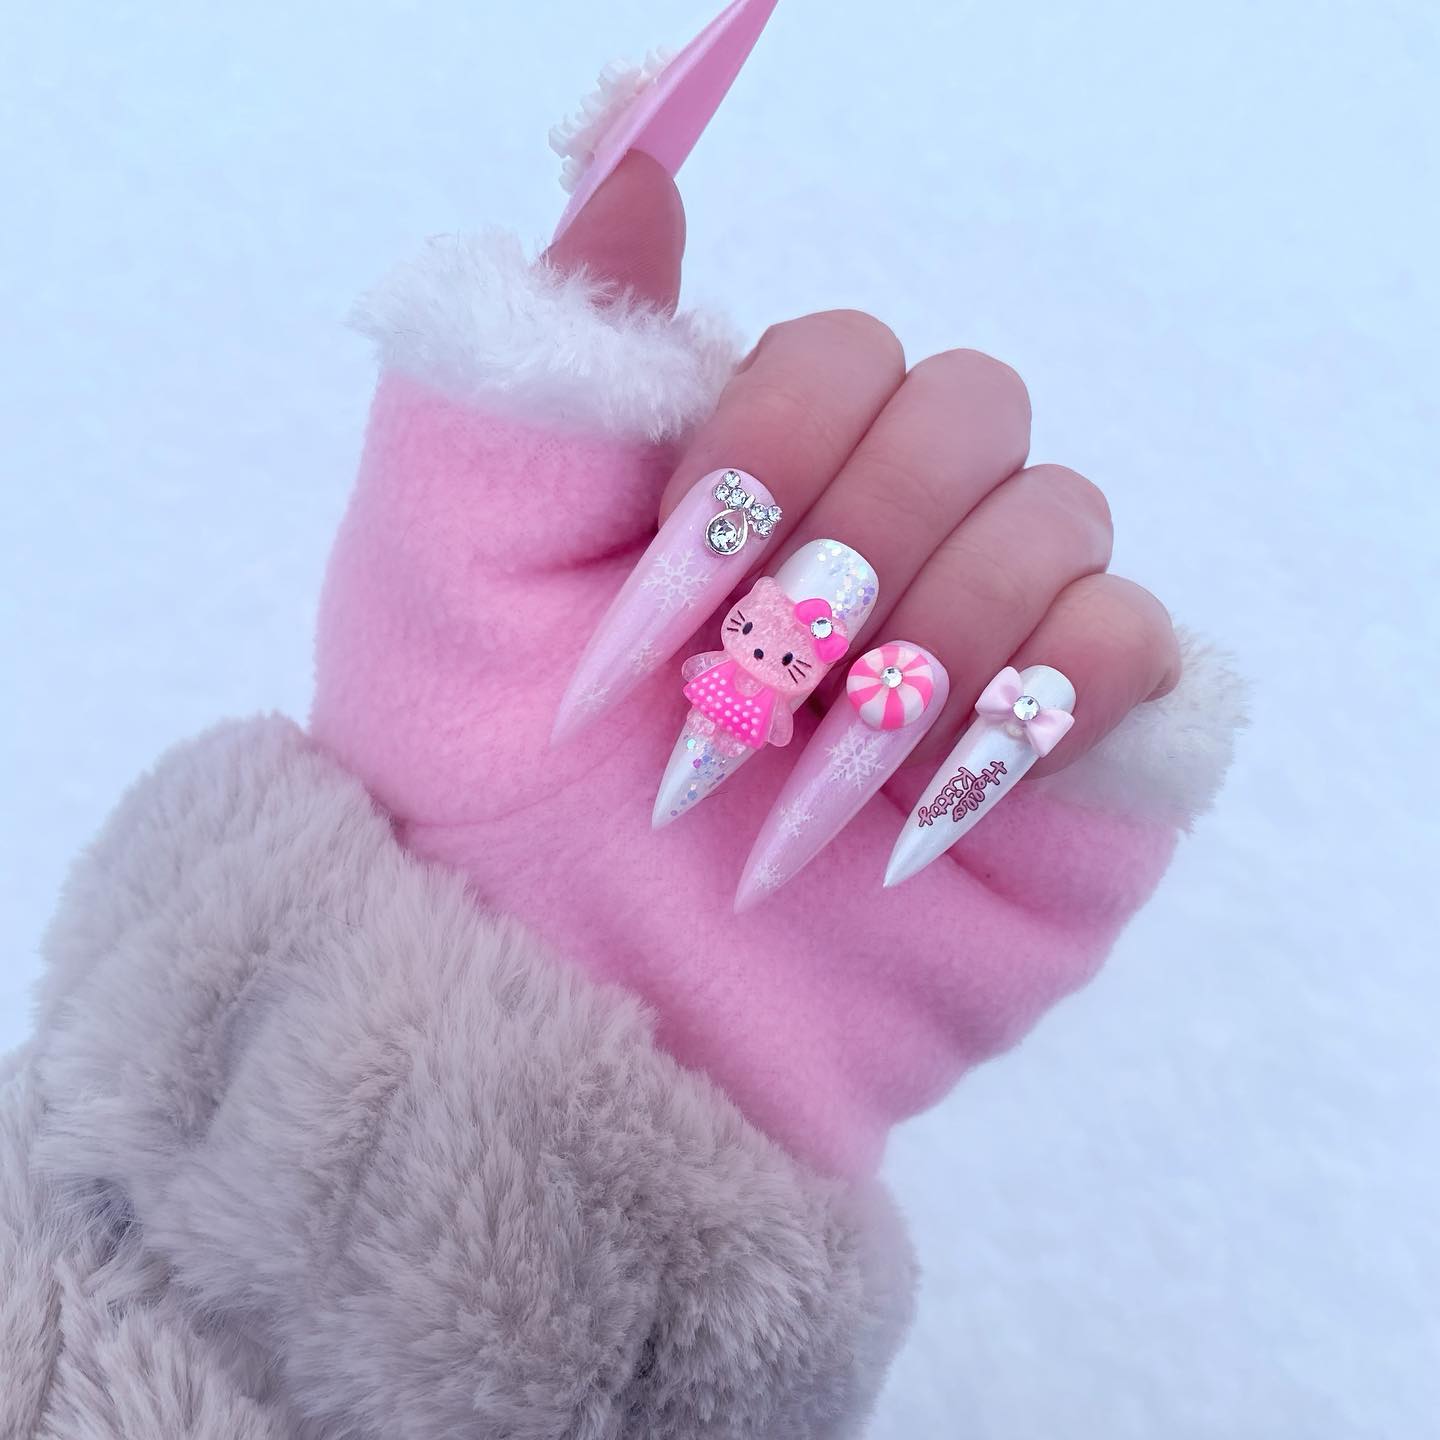 Roze acrylnagels met witte sneeuwvlokken